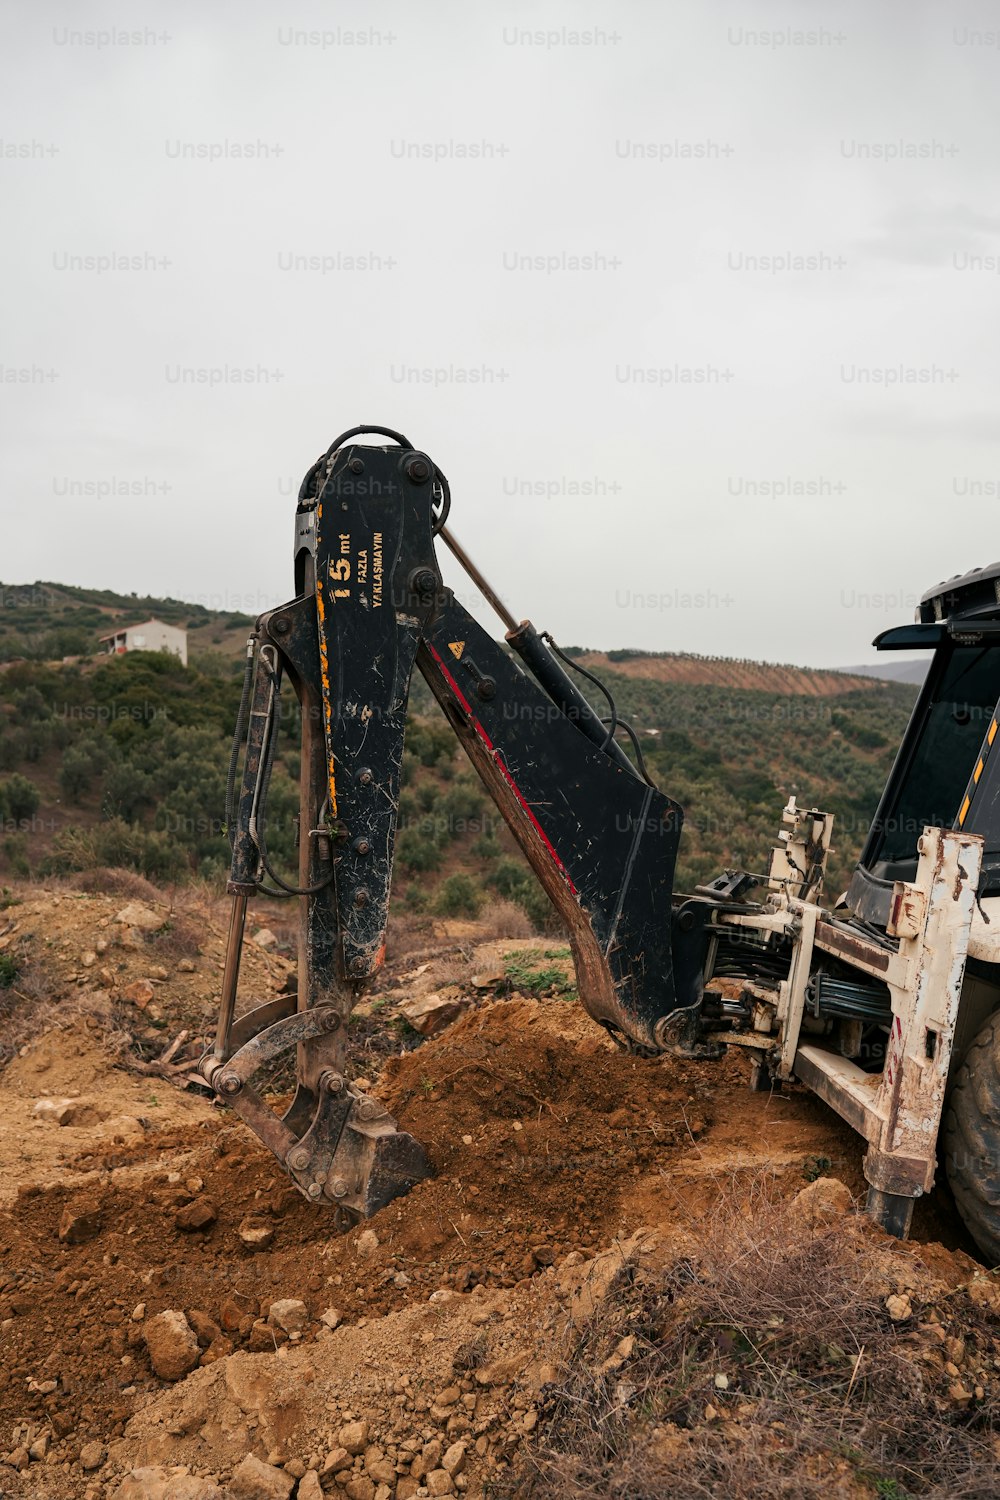 a bulldozer digging through a dirt field